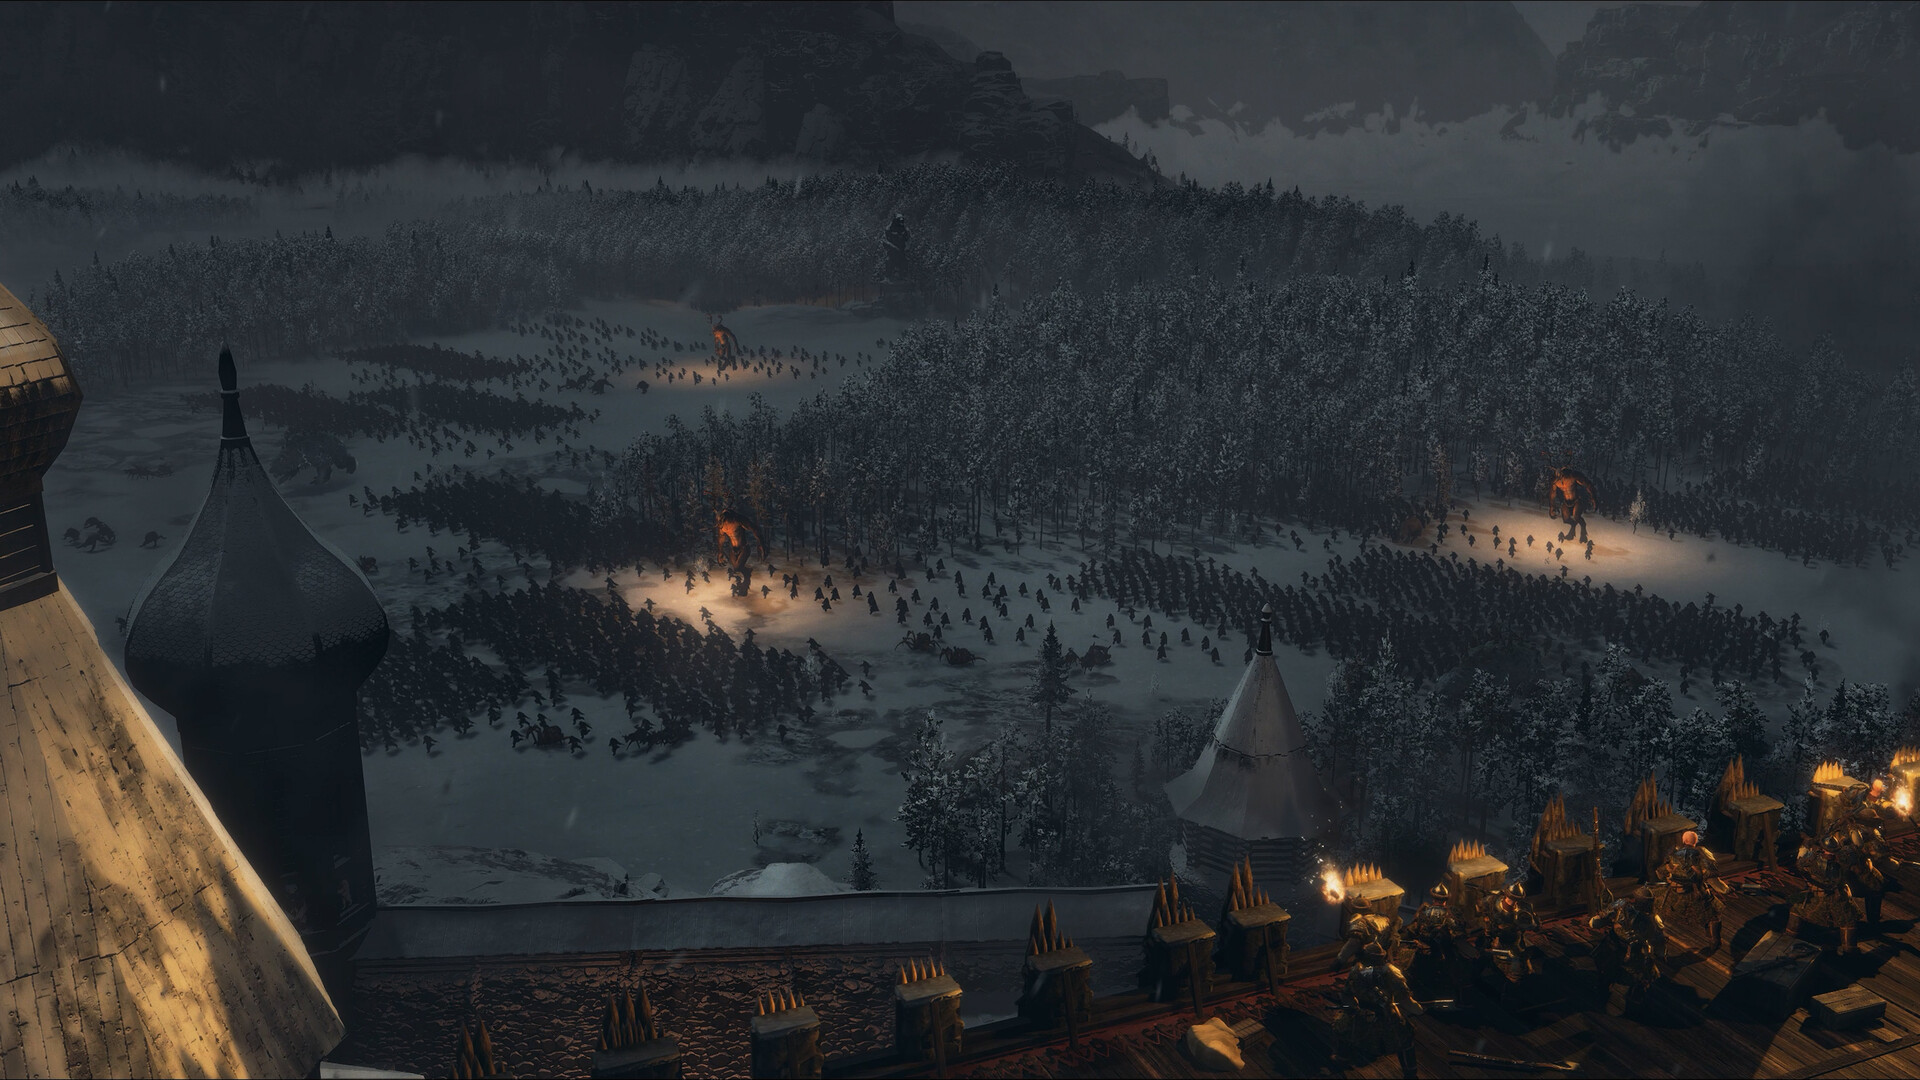 Total War: WARHAMMER III - Shadows Of Change DLC Steam Altergift